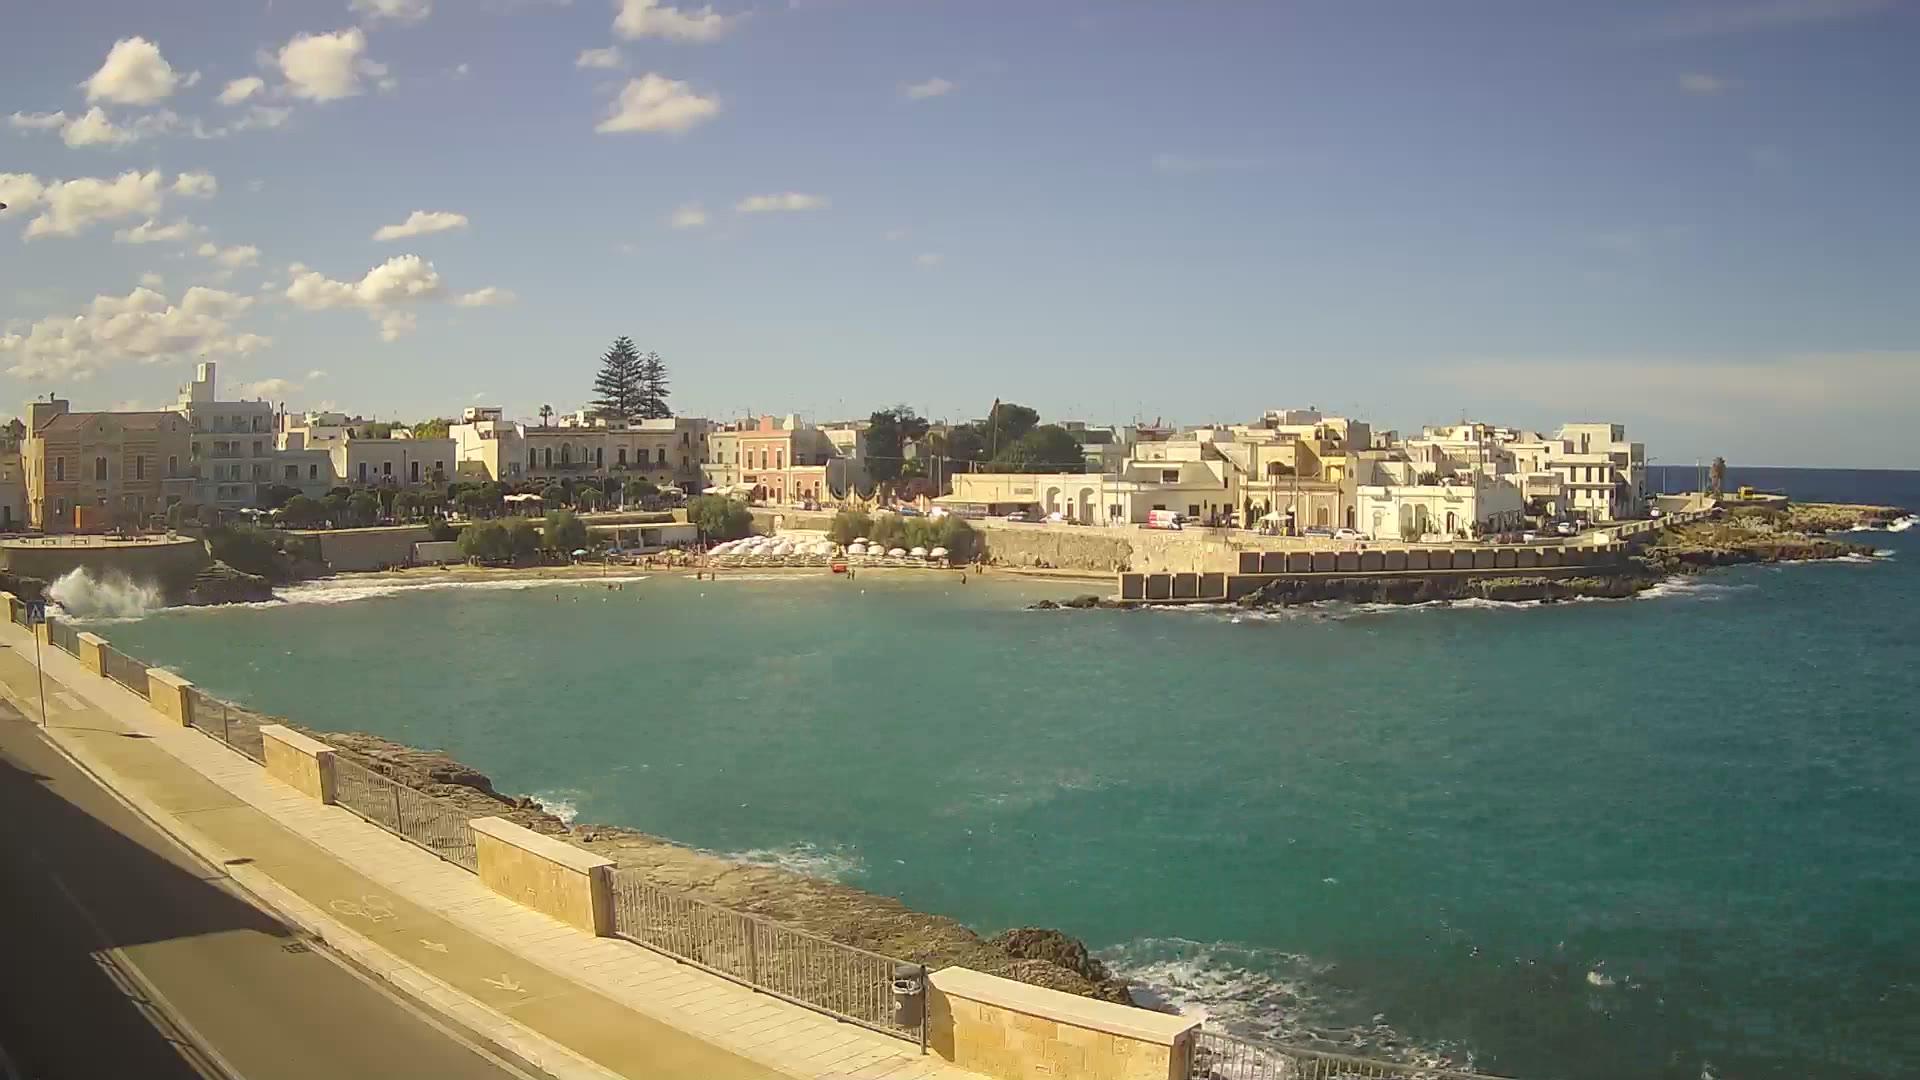 Webcam Nardò, Santa Maria al Bagno - Studio Immobiliare Spano